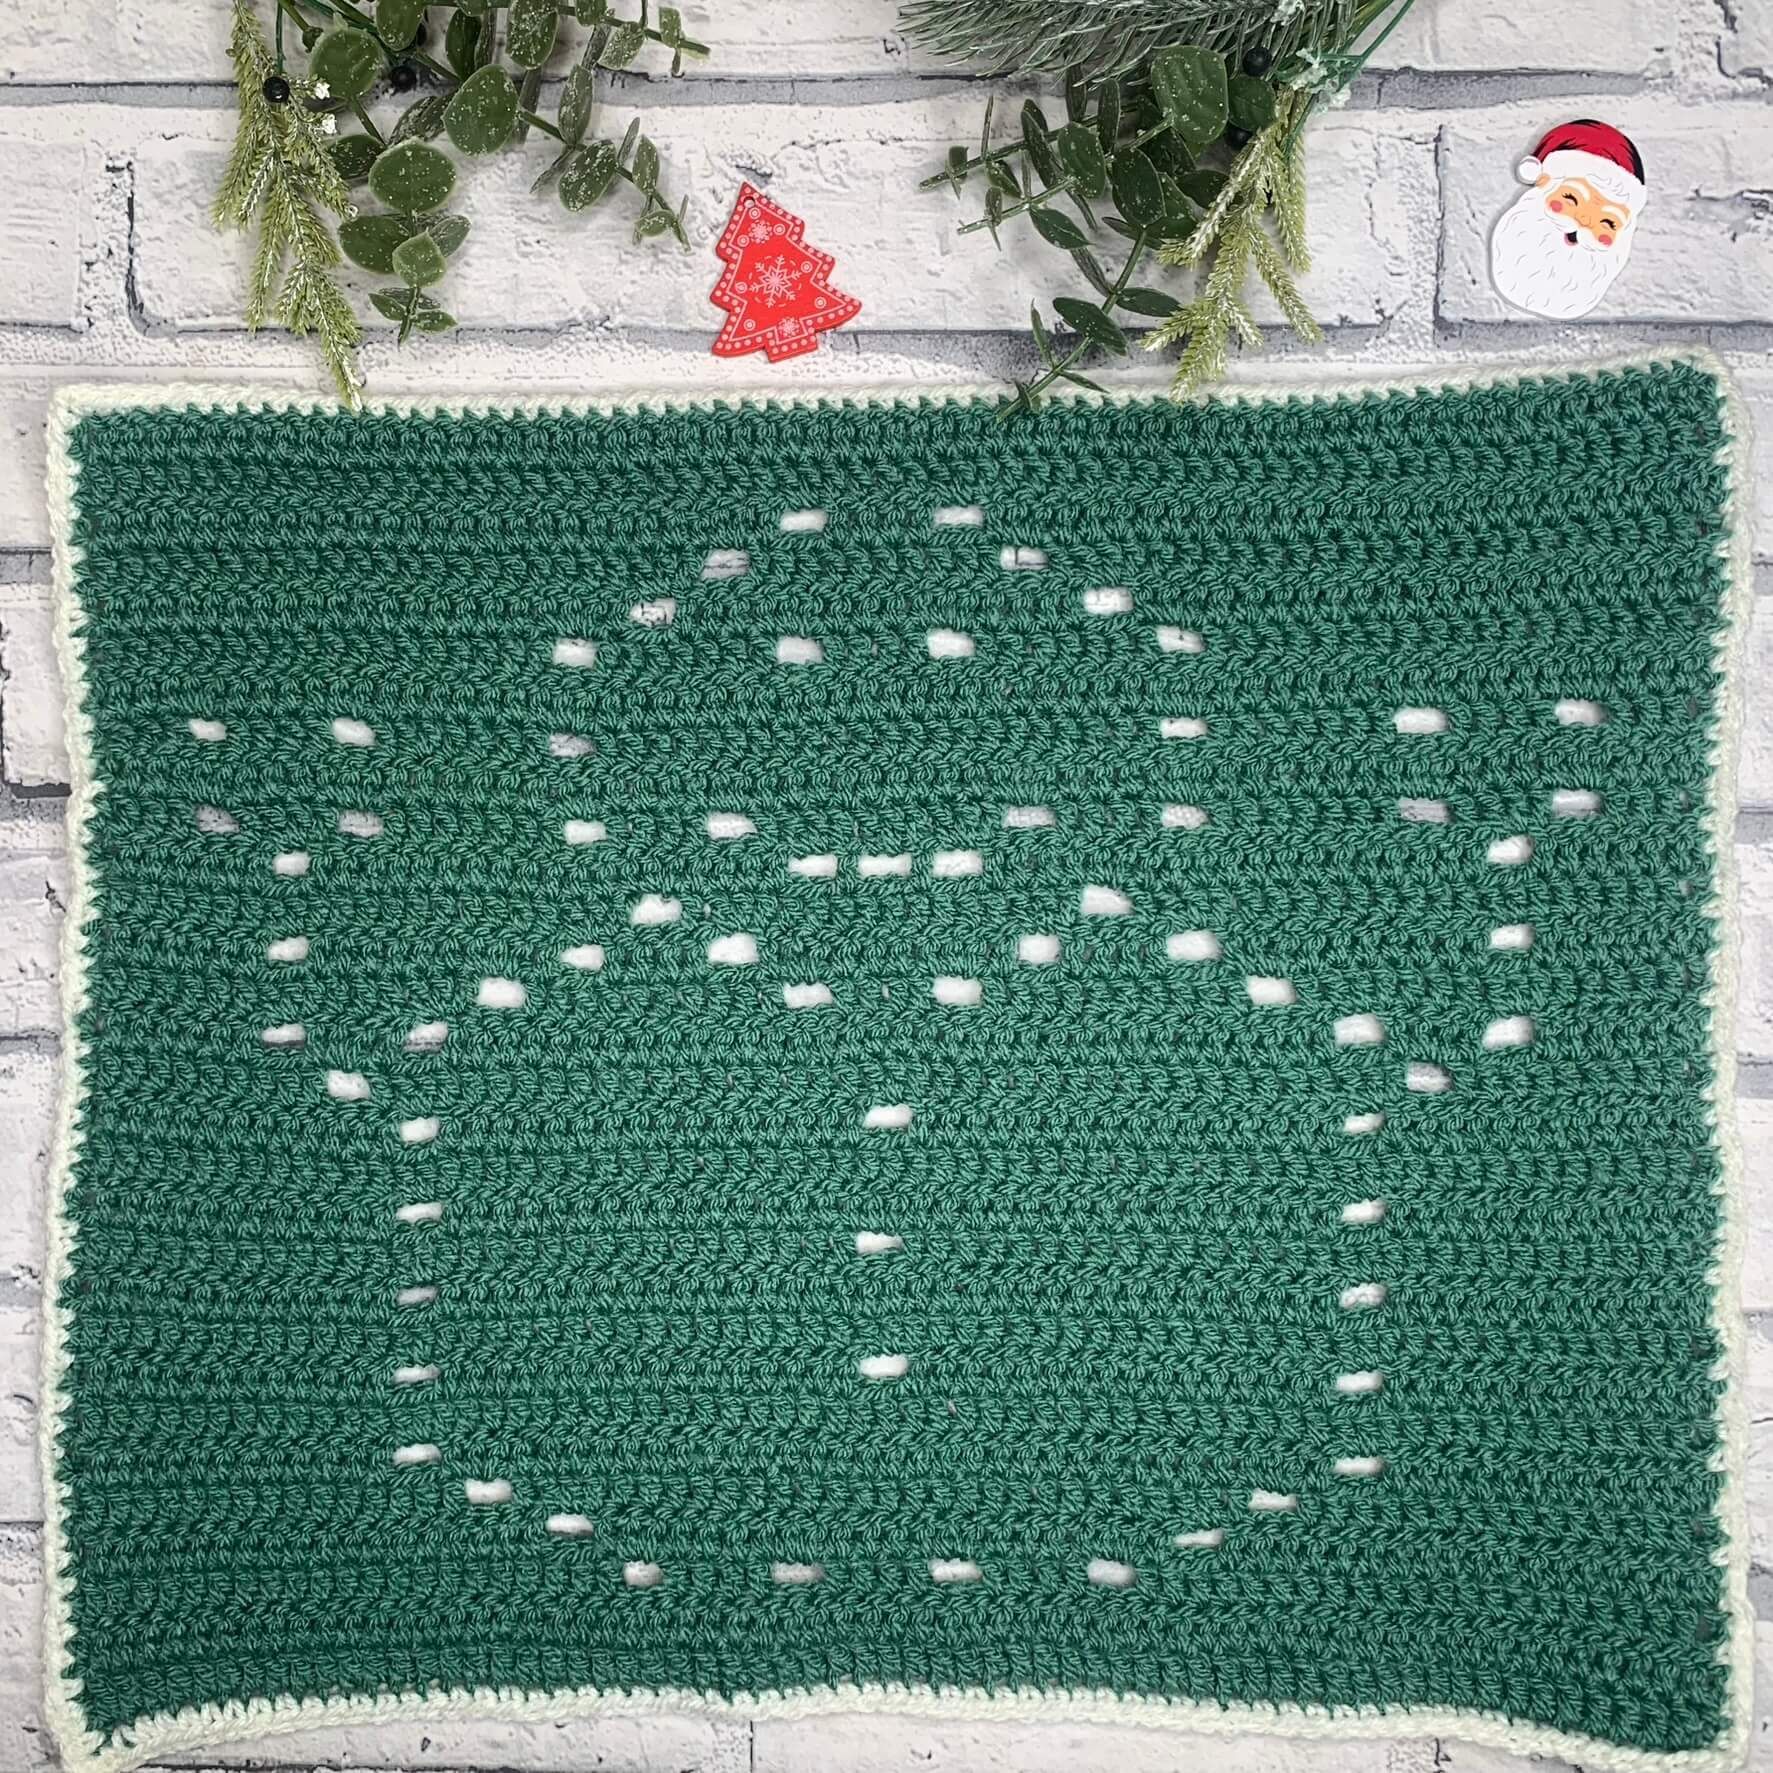 Snowman Filet Crochet Pattern Free for beginners